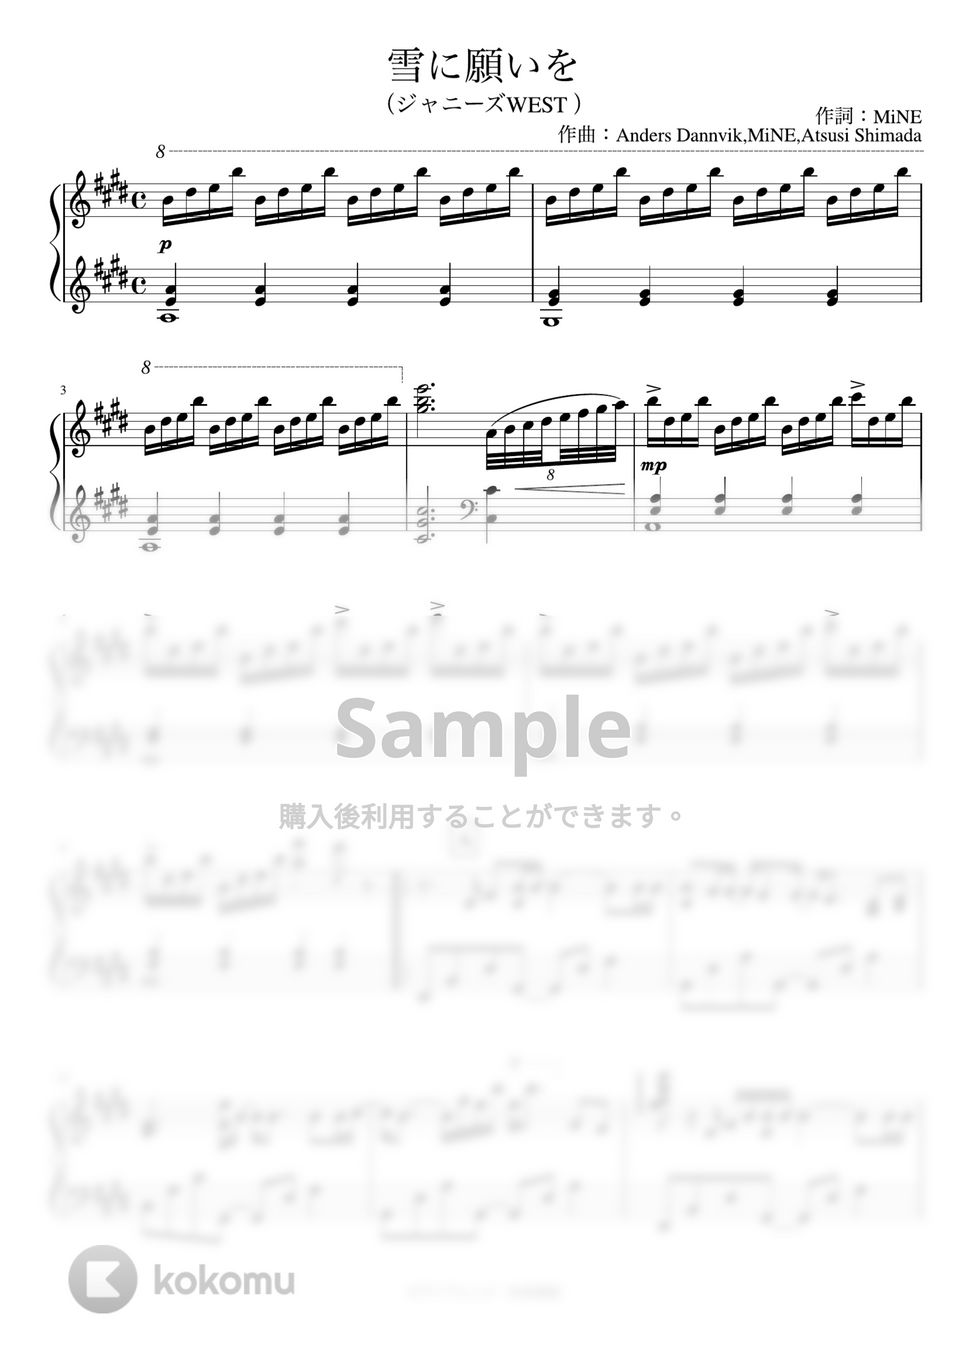 ジャニーズWEST - 雪に願いを (ピアノソロ) by あきのピアノ演奏